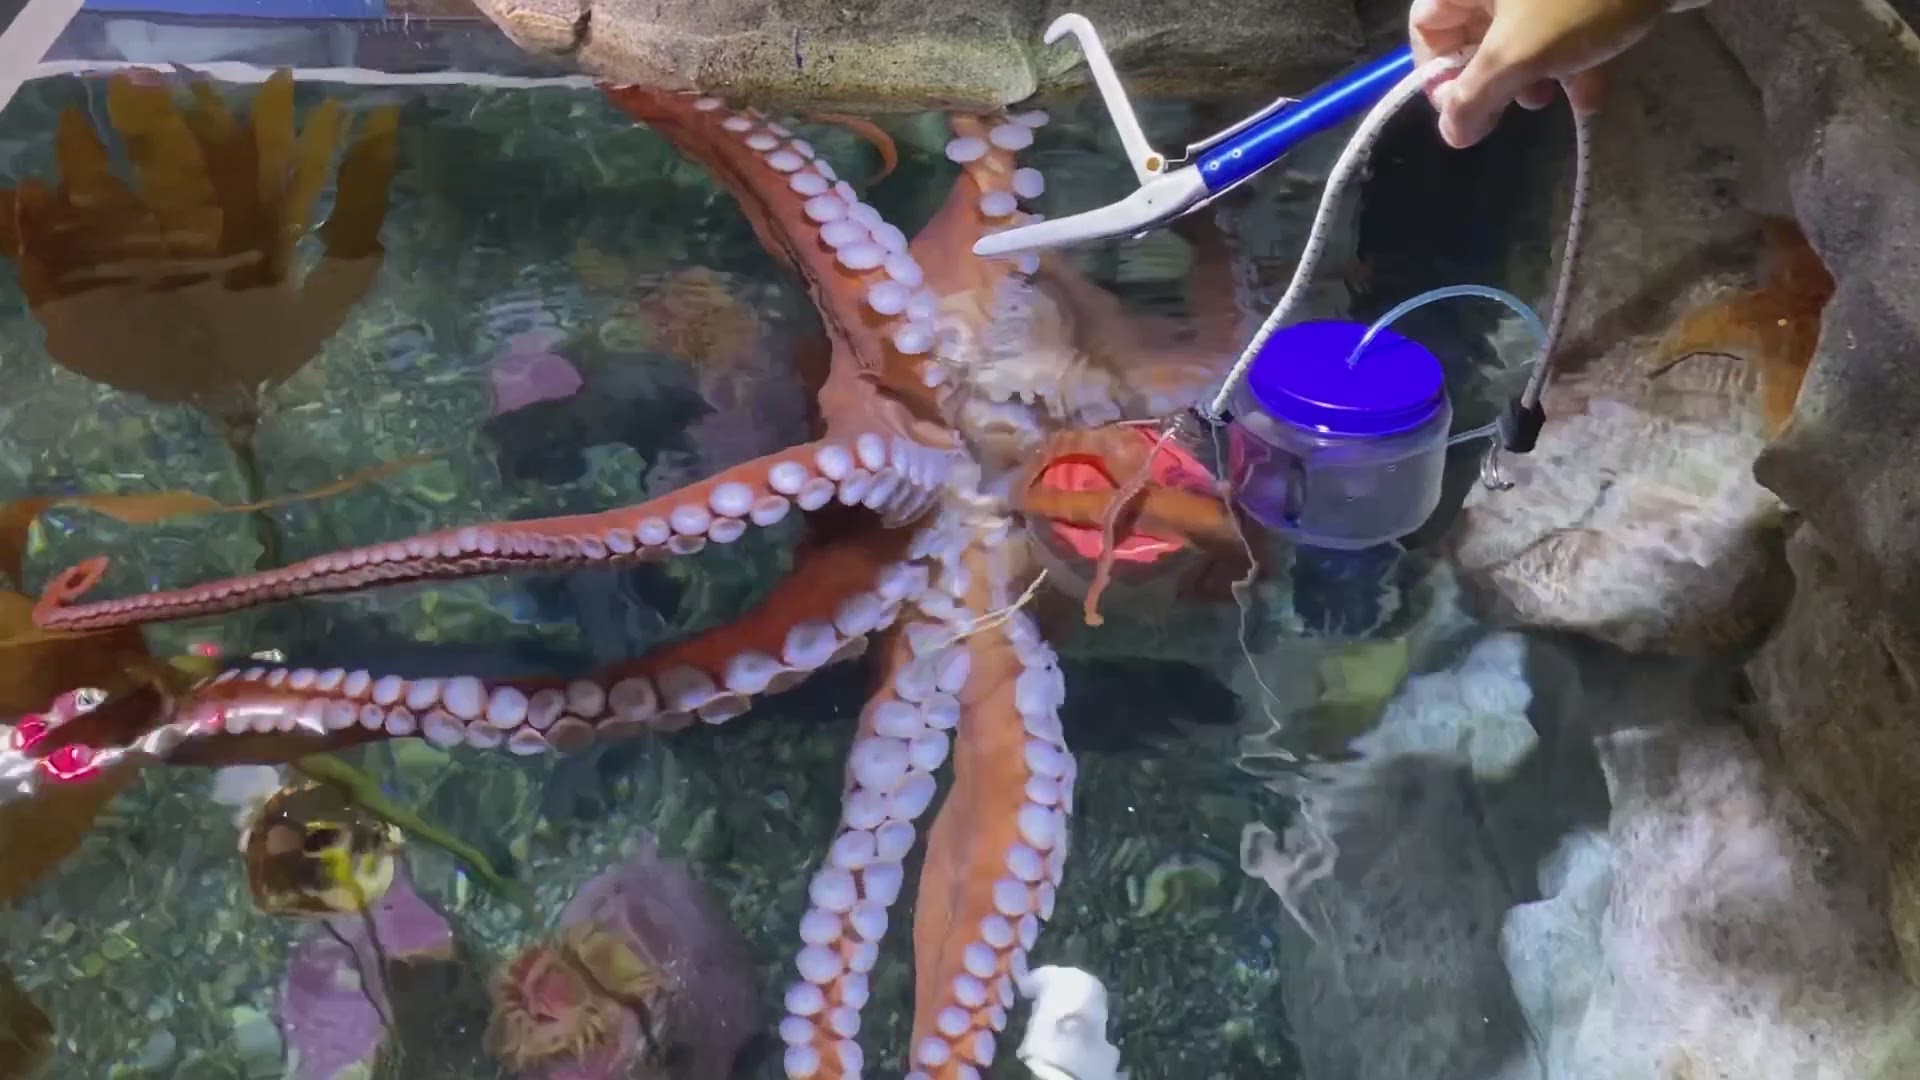 UW octopus scientist on the Seattle Kraken 